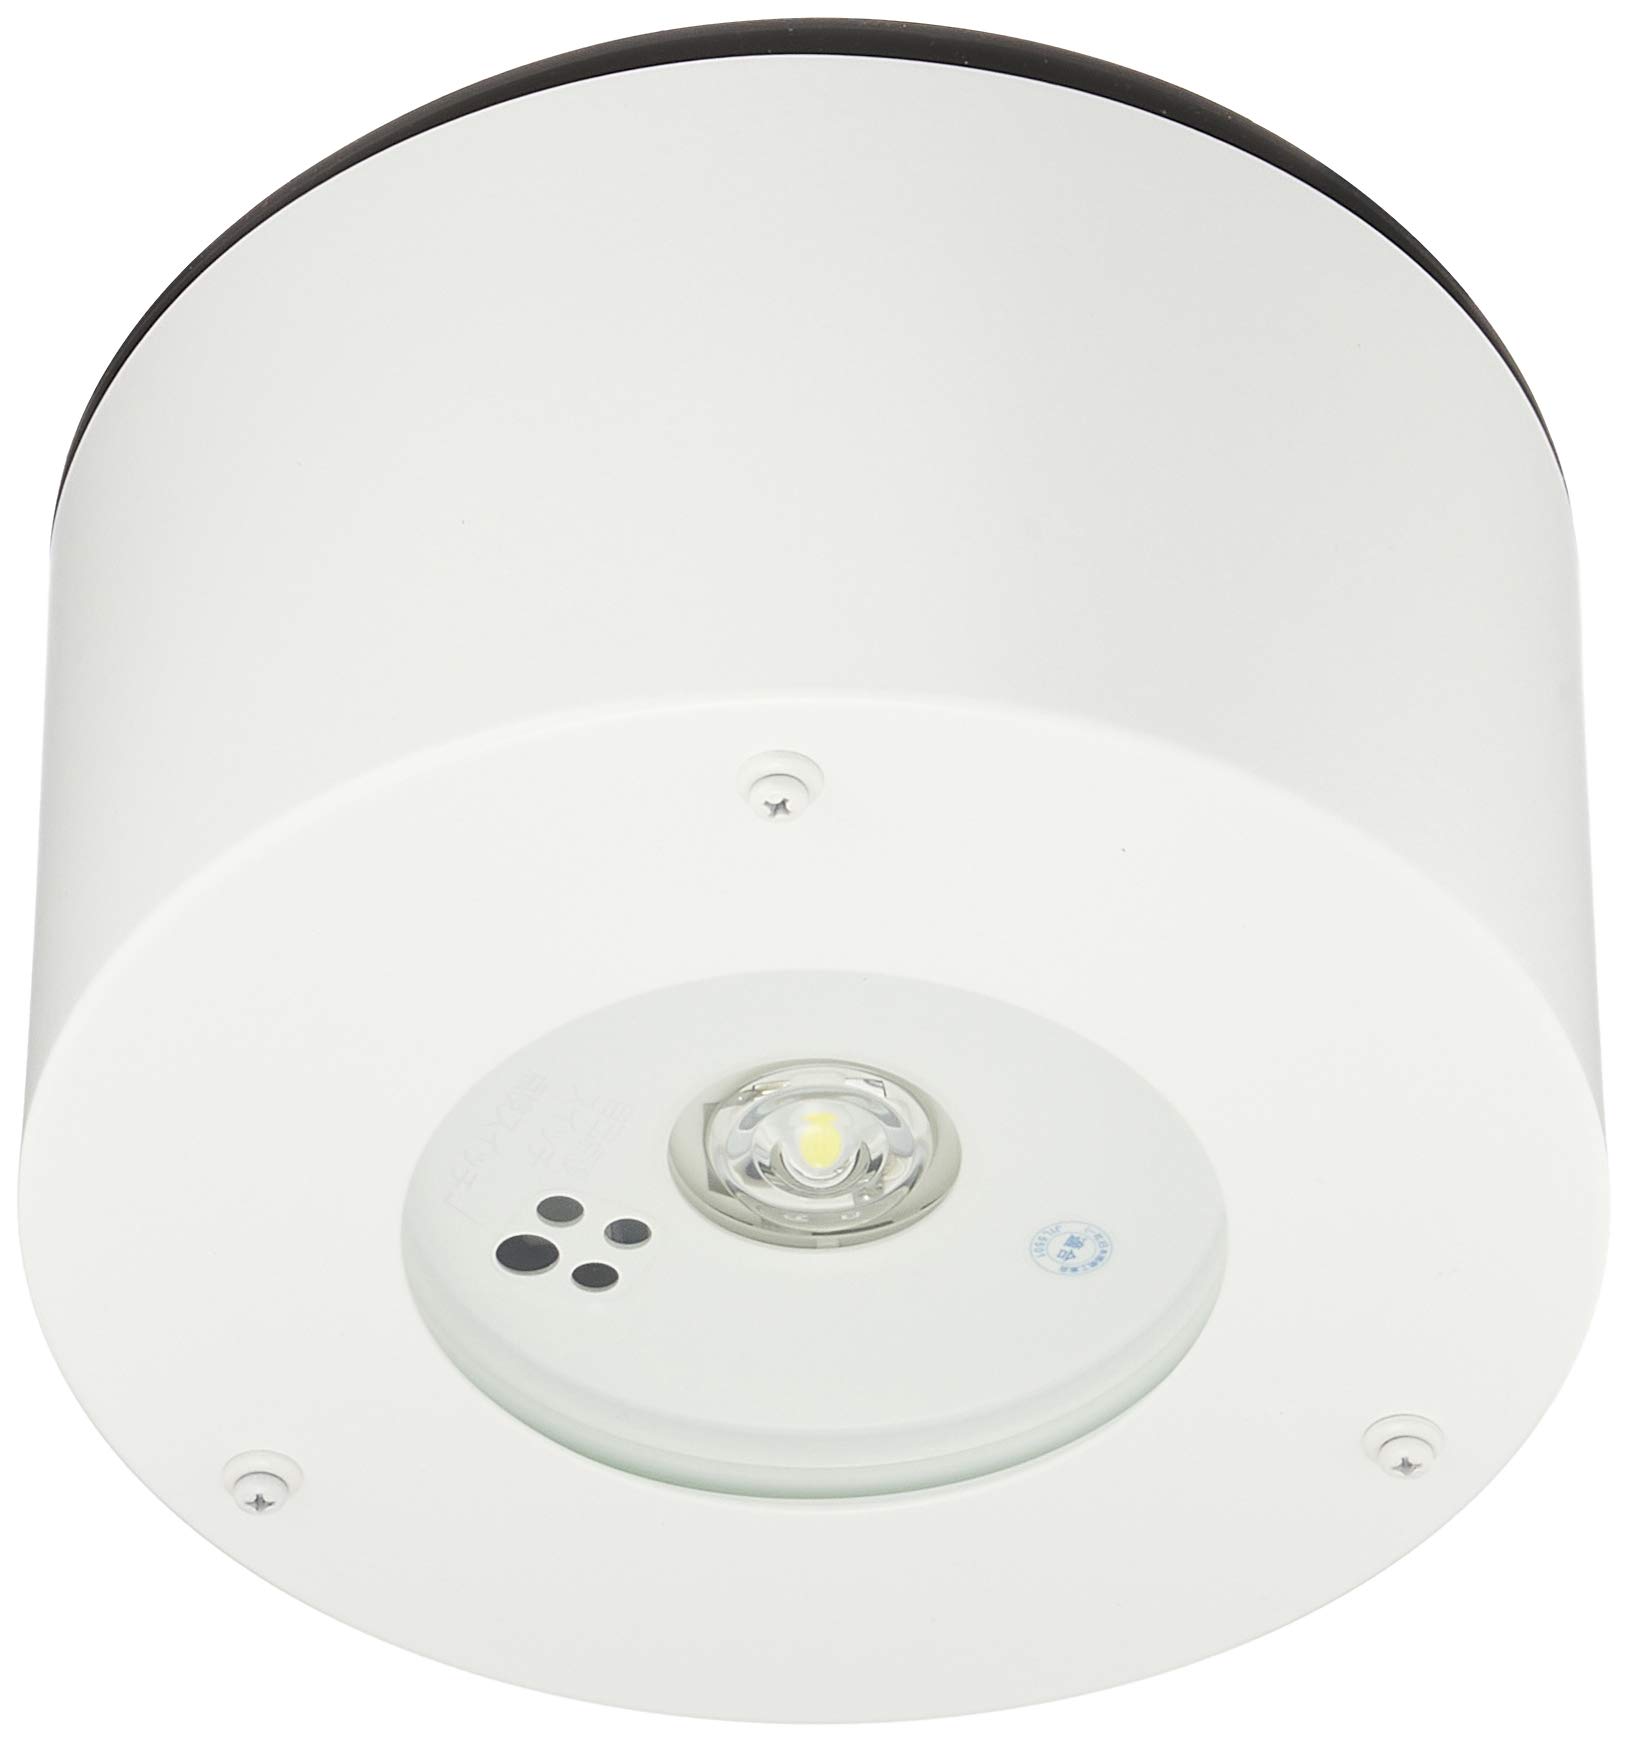 パナソニック LED非常用照明器具 直付 低天井用~3m 防湿型・防雨型 昼白色 NNFB91105J